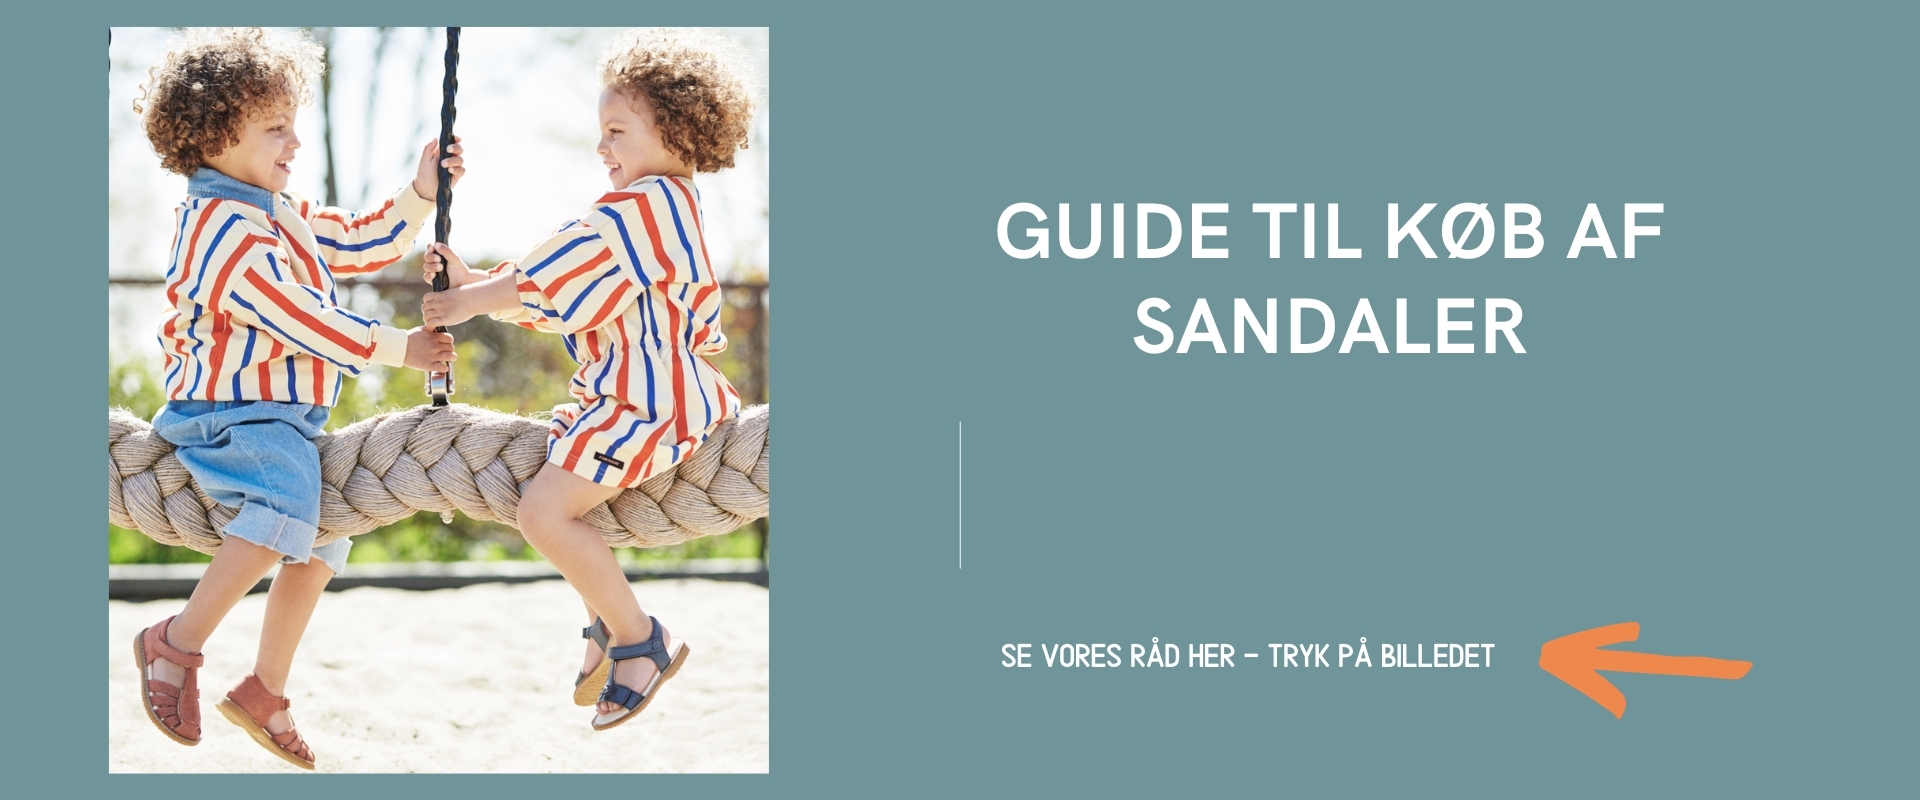 Guide til køb af sandaler til børn